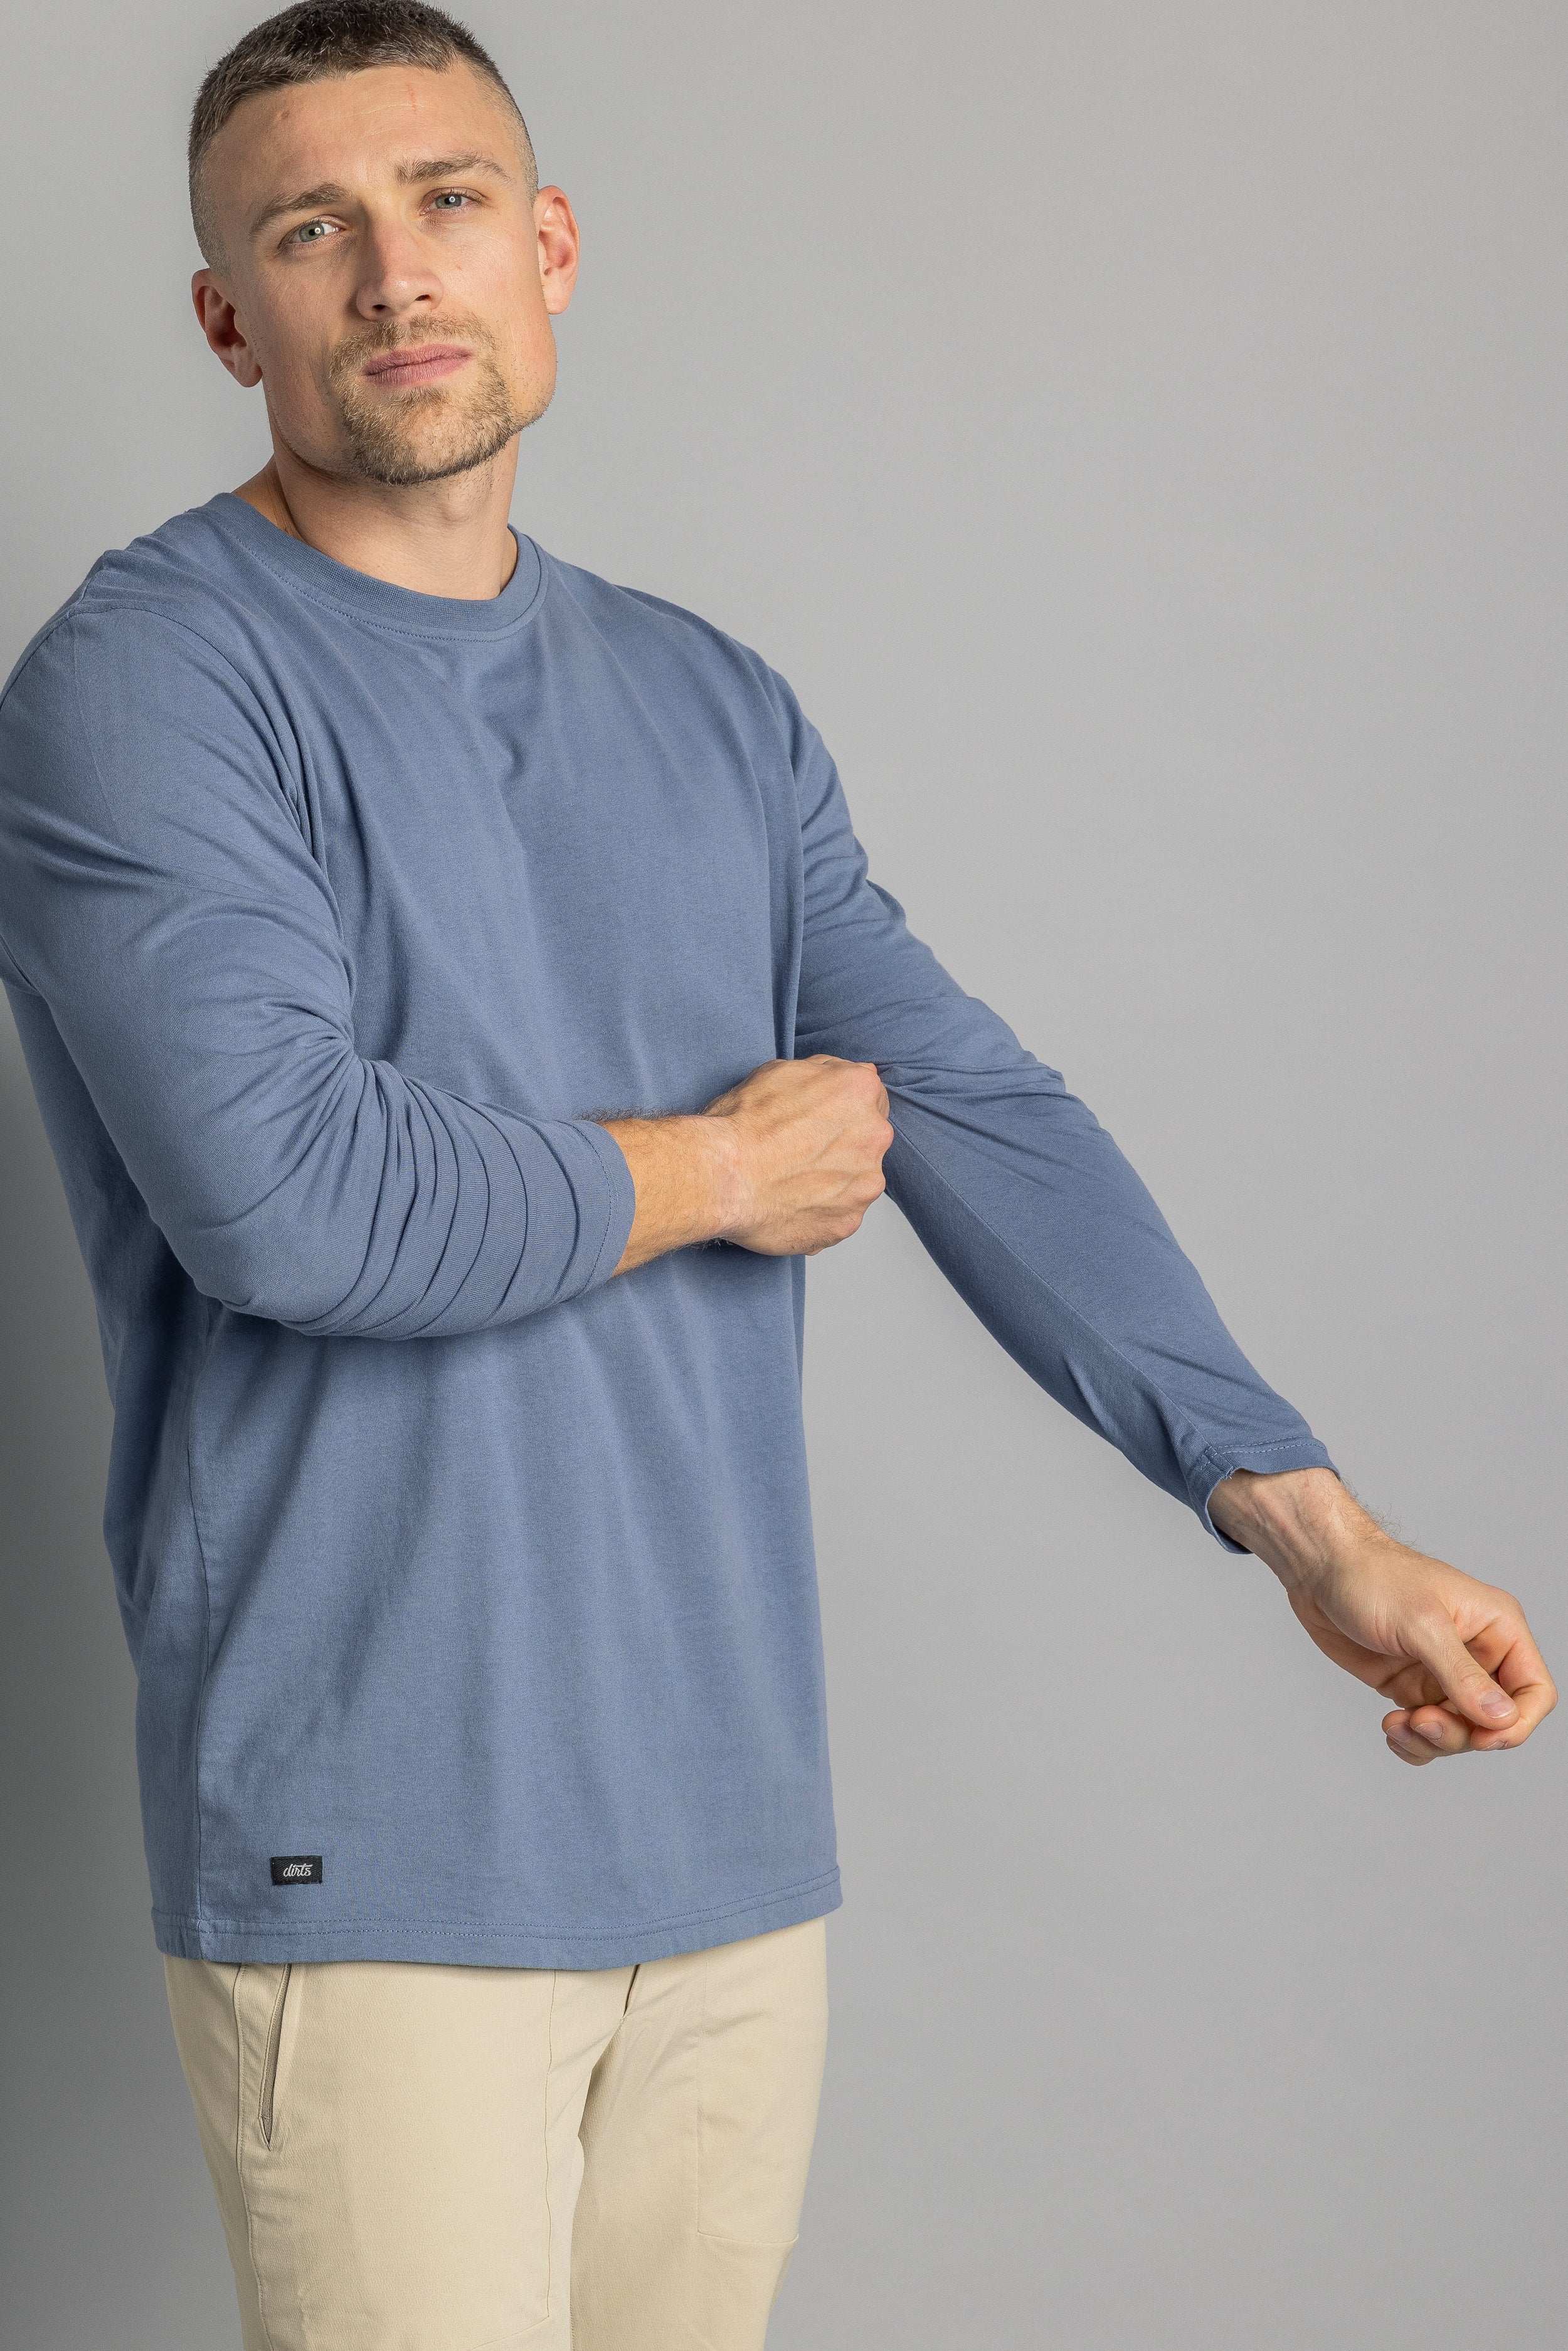 Blaues, langärmliges T-Shirt aus recycelter Baumwolle von DIRTS